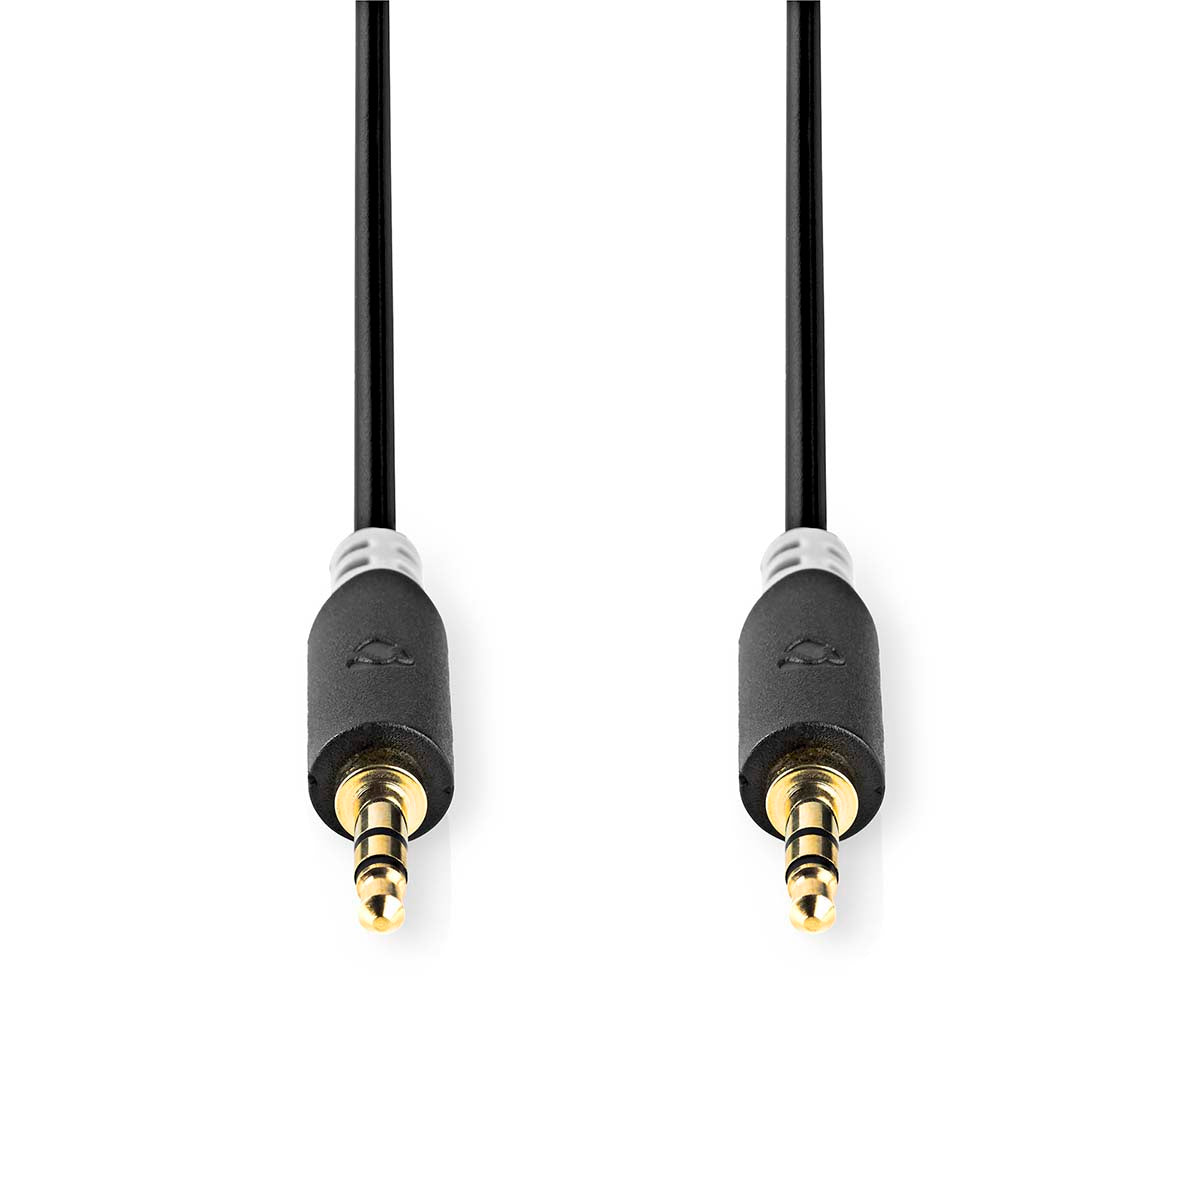 Stereo-Audiokabel | 3.5 mm Stecker | 3.5 mm Stecker | Vergoldet | 2.00 m | Rund | Anthrazit | Box